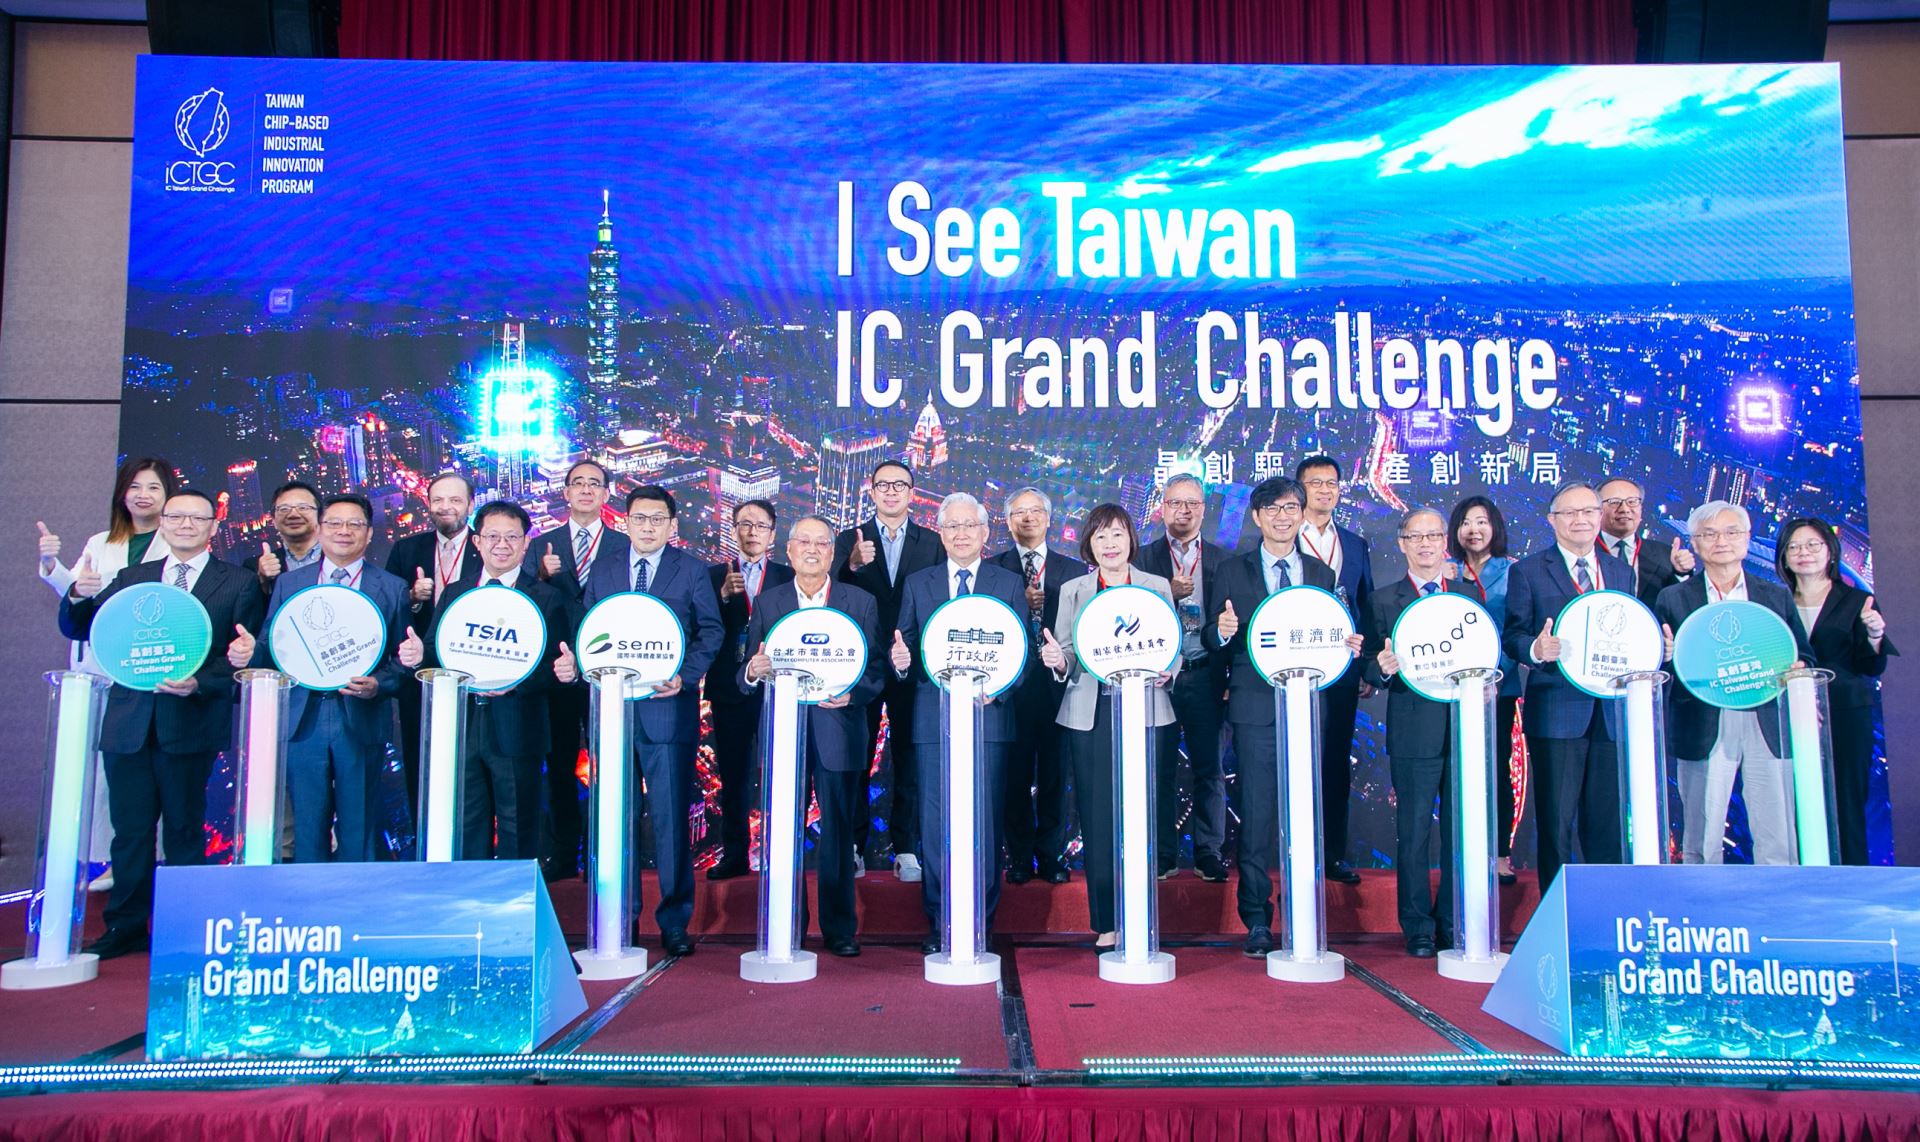 行政院政委兼國科會主委吳政忠今(14)日宣布啟動晶創臺灣方案「IC Taiwan Grand Challenge」 競賽全球徵案，向全球科技人才發出英雄帖。圖為啟動儀式合影。